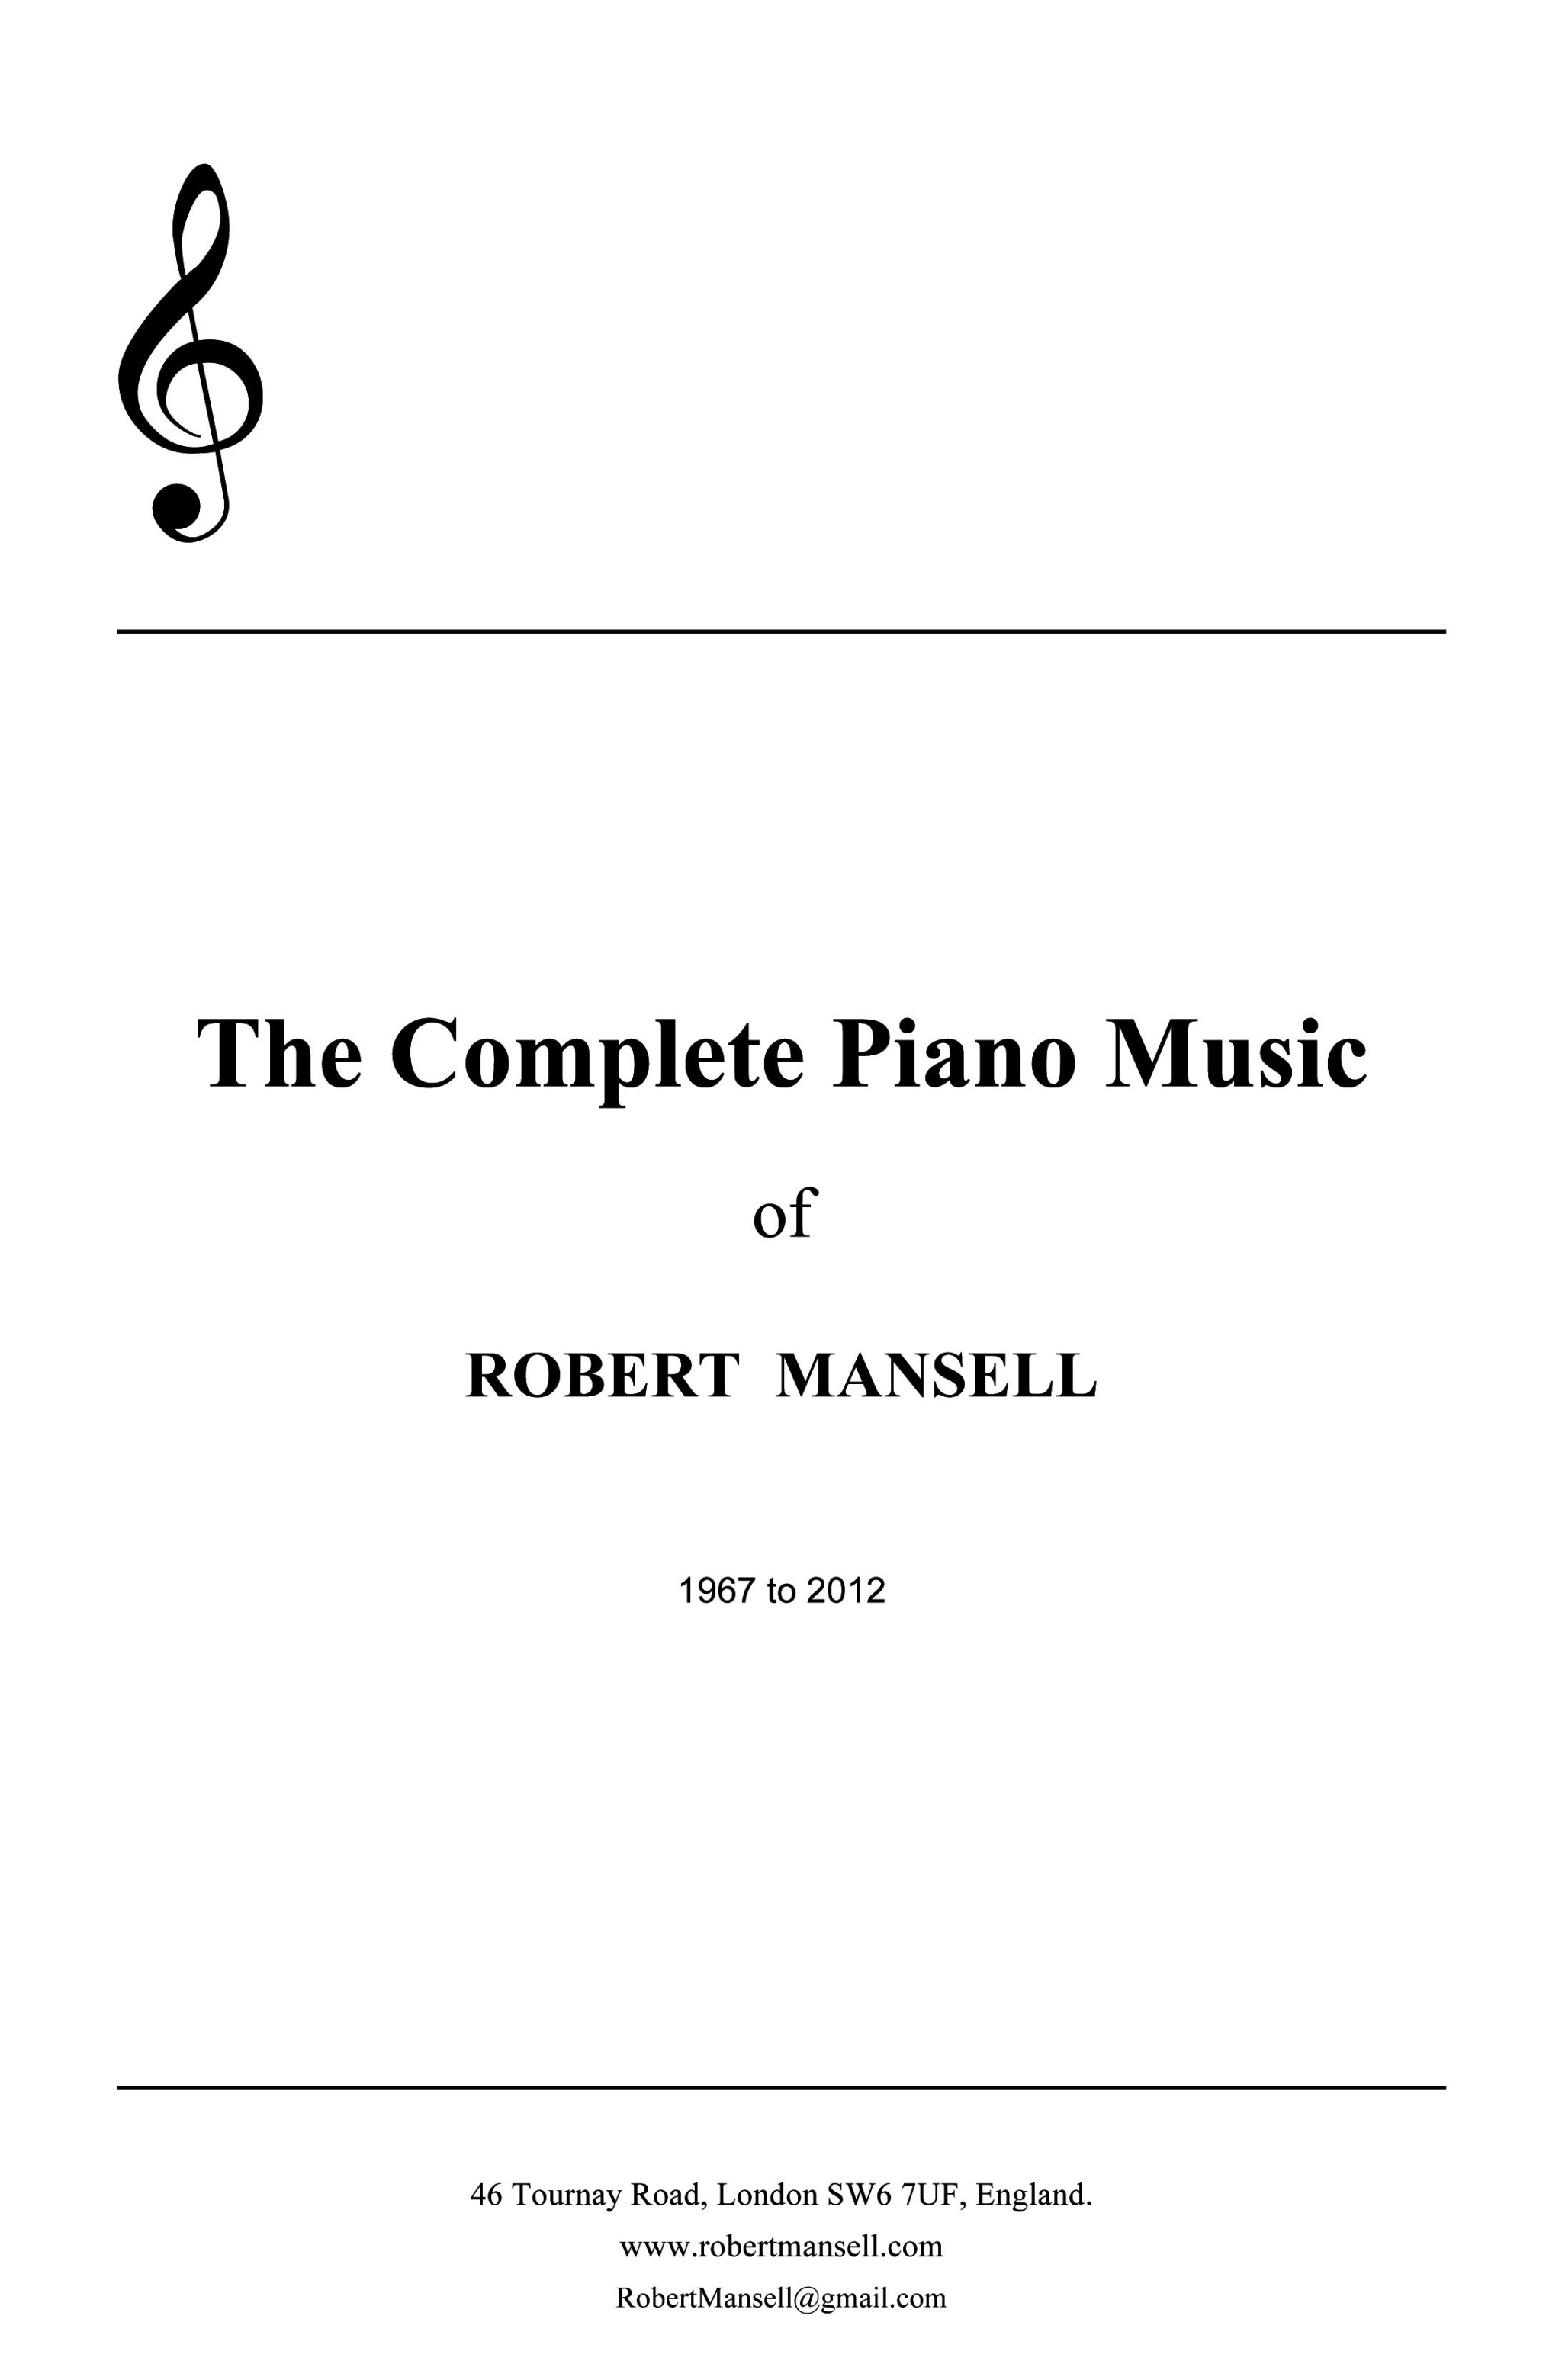 PIANO MUSIC COVER.jpg